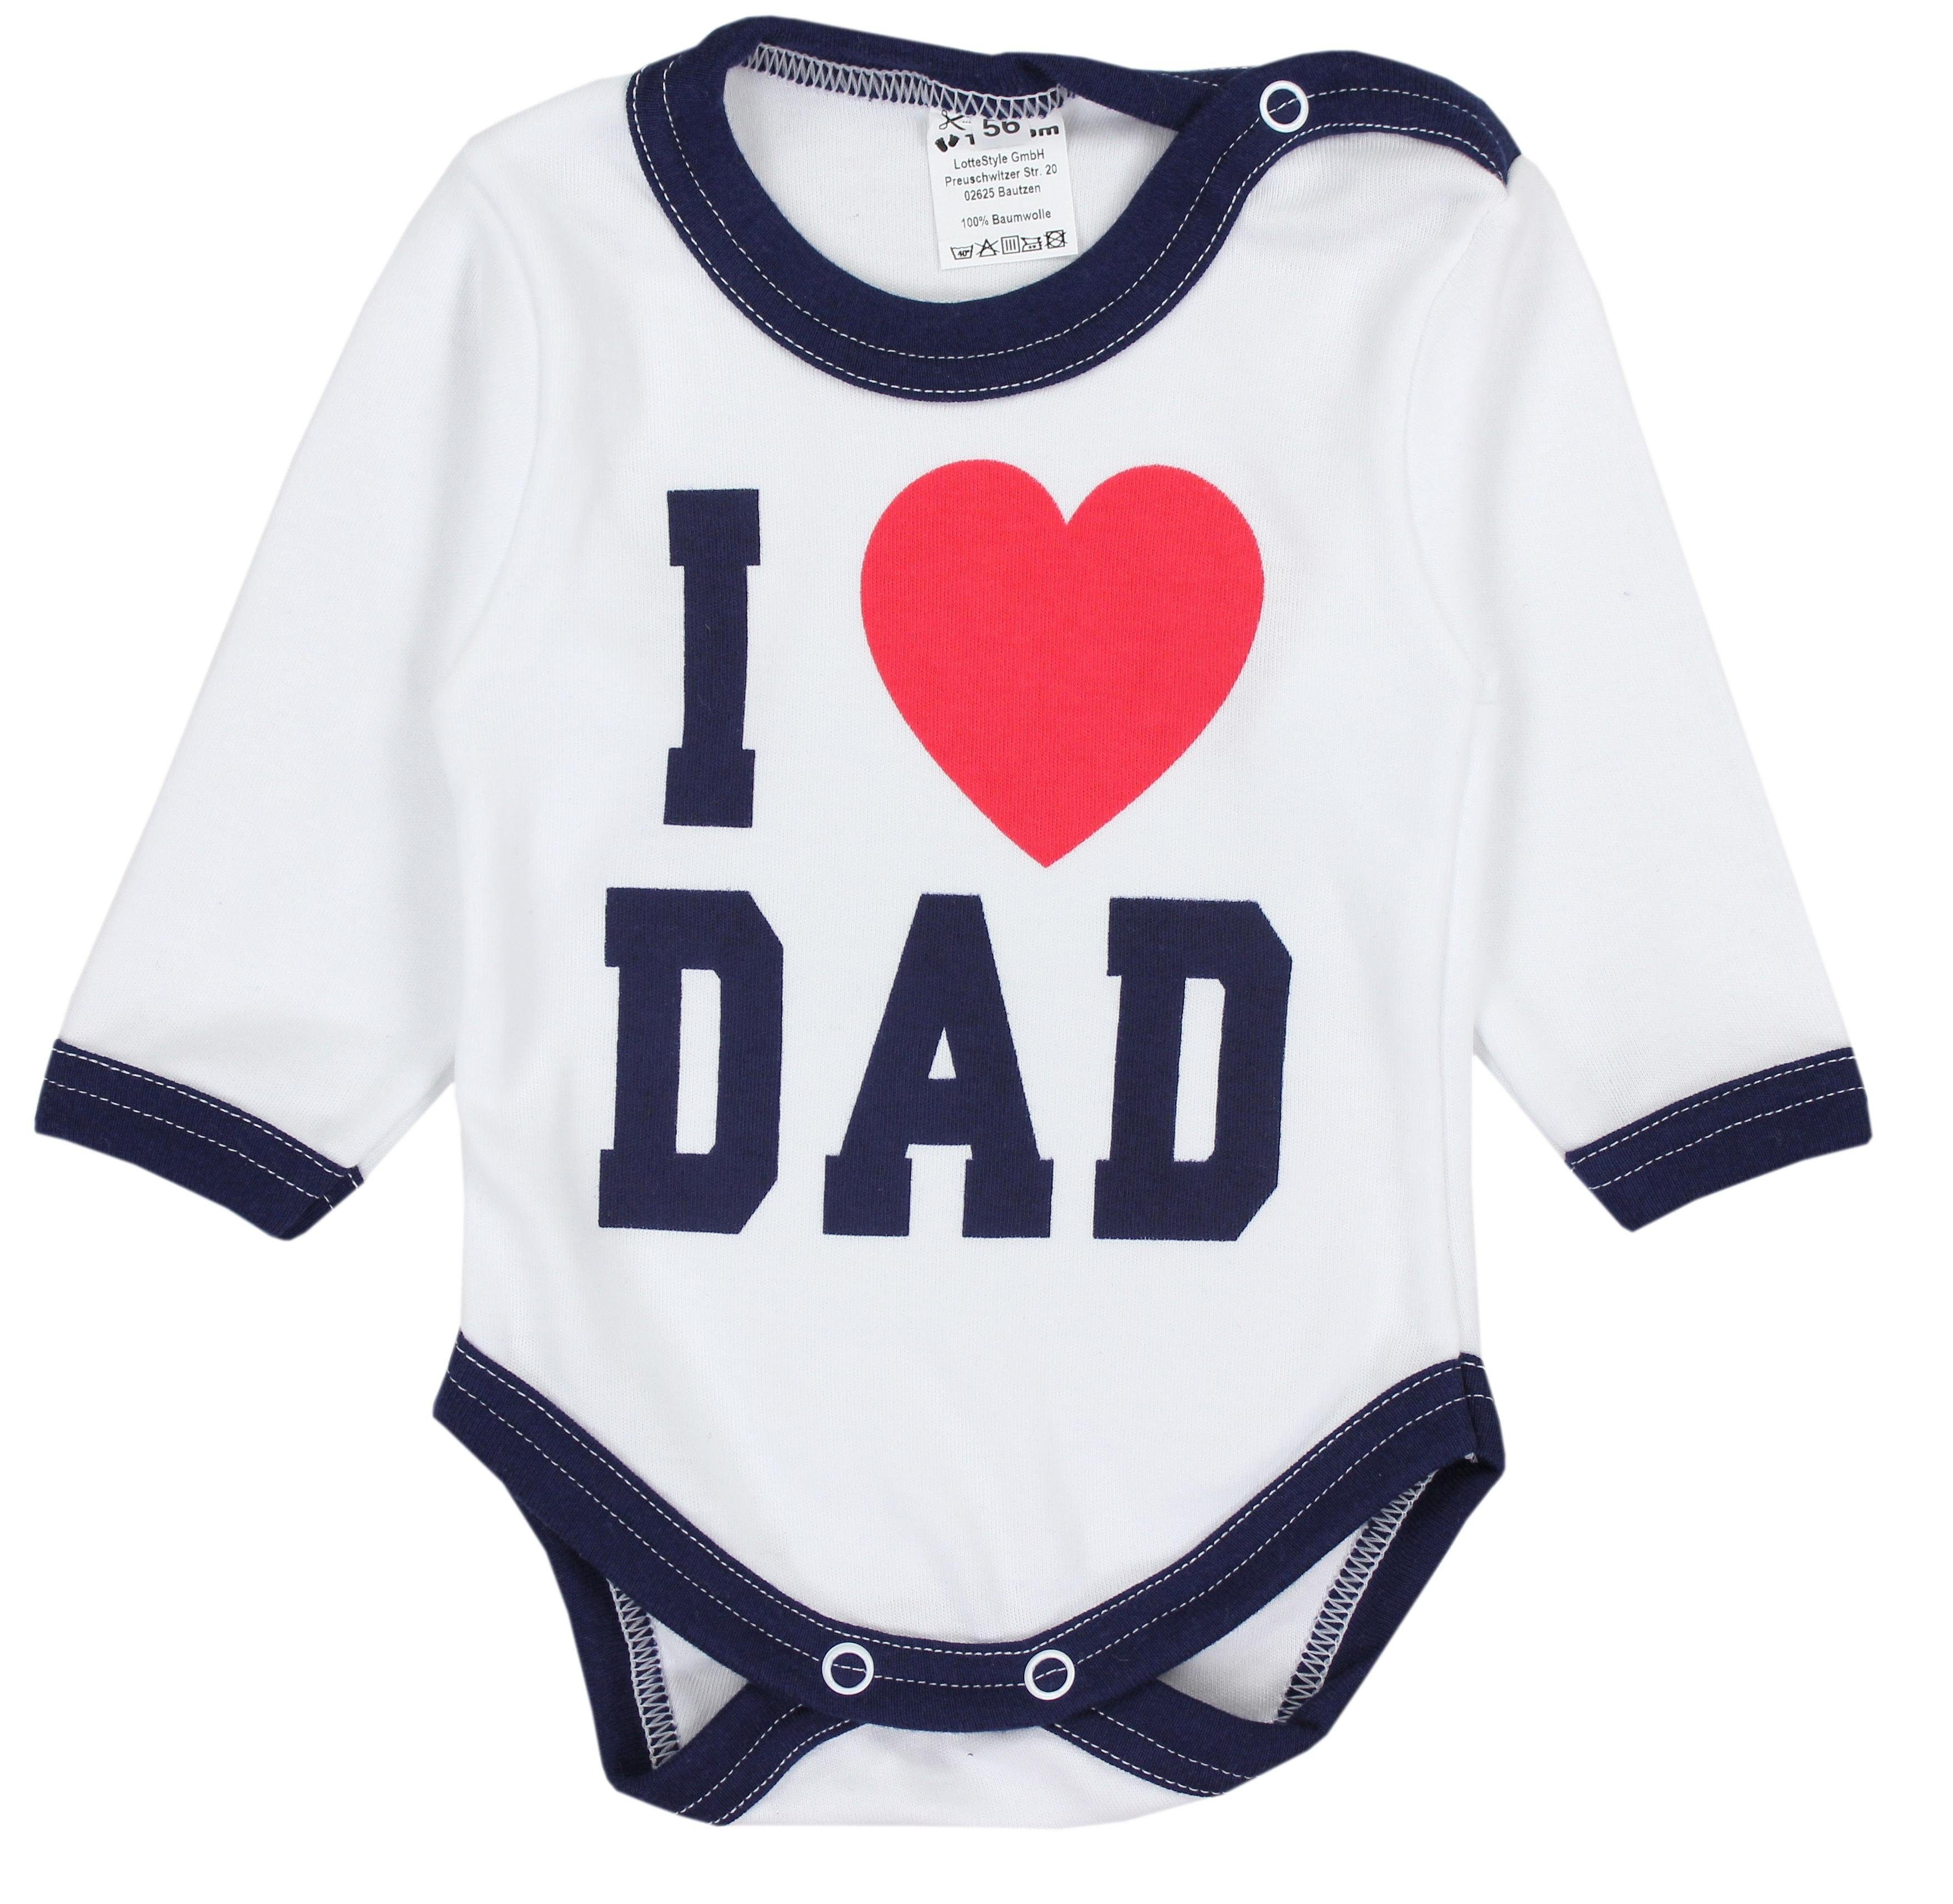 Dad Body Erstausstattungspaket Baby Love Strampelhose Bekleidungsset Mütze Set TupTam Kleidung I Dunkelblau